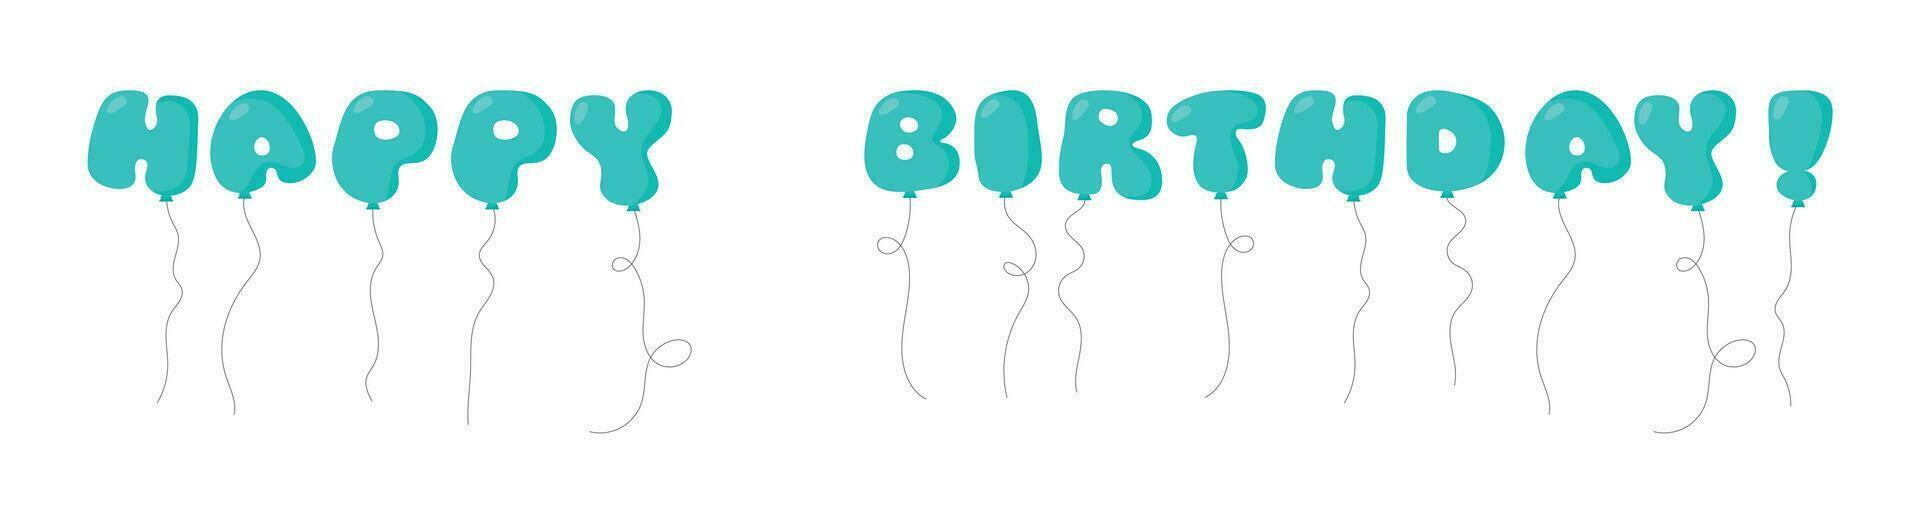 glücklich Geburtstag Party Ballon Text gebunden mit Saiten. Vektor Illustration im Karikatur Stil